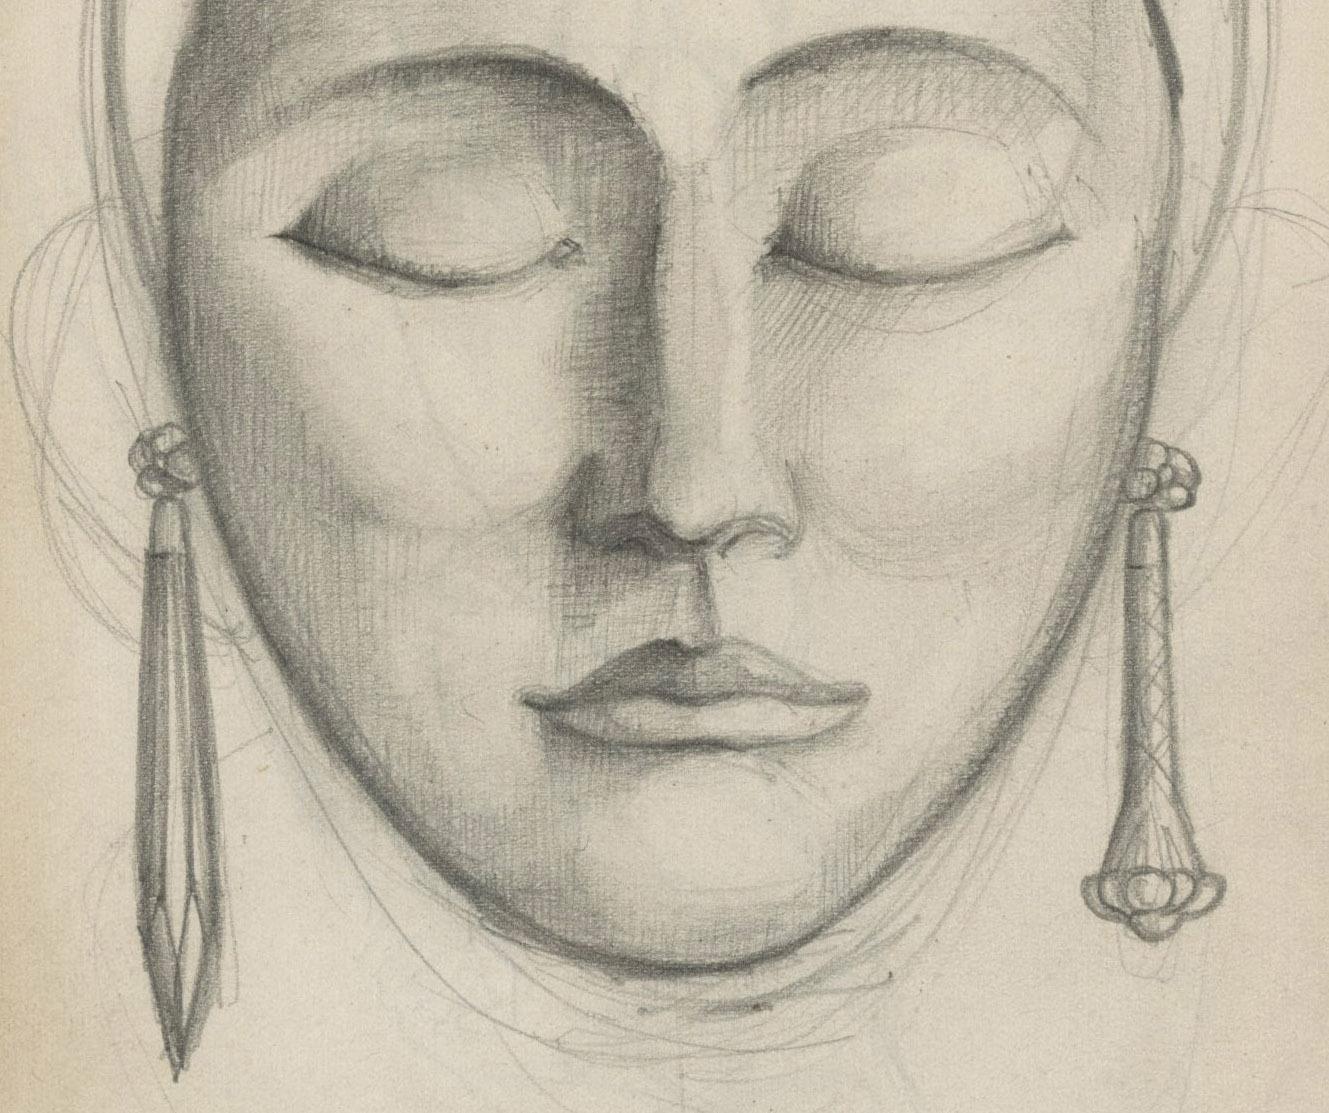 Kopf einer Deko-Frau (recto)   Standendes männliches Modell (verso)
Graphit auf Papier, 1925
Signiert mit den Initialen des Künstlers 